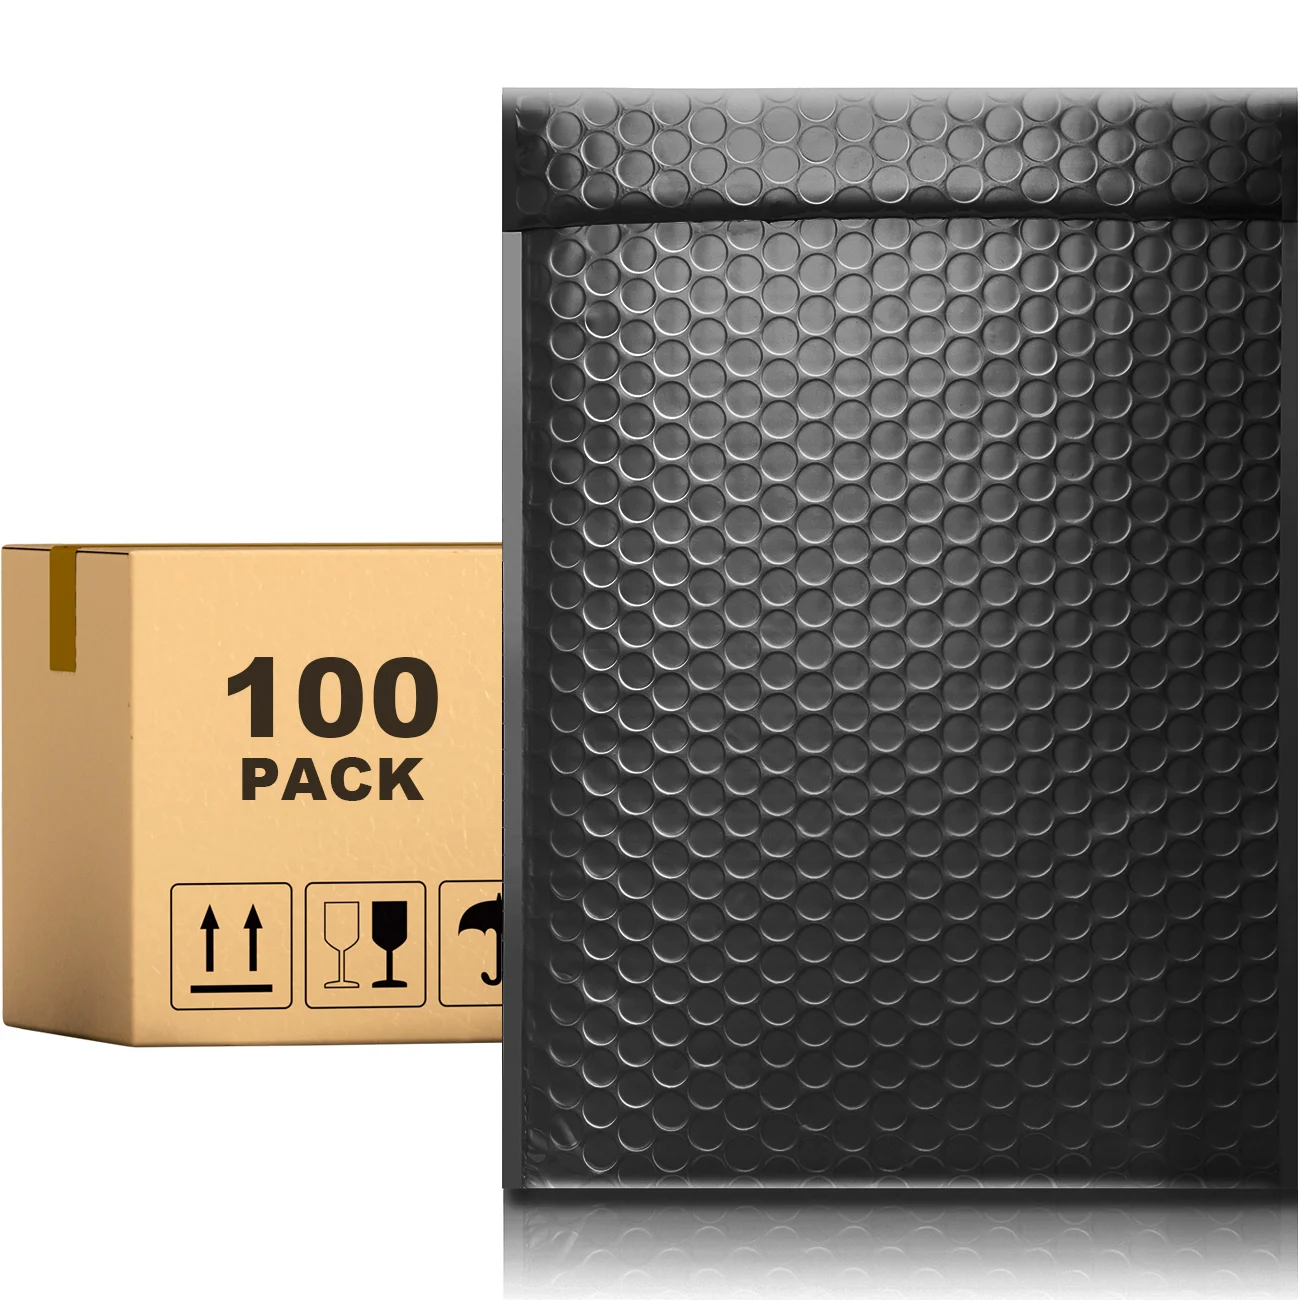 

Черный Конверт PACKAPRO с самозапечатывающейся пузырчатой пленкой, 10x13 дюймов, 100 шт., для упаковки, отправки посылки